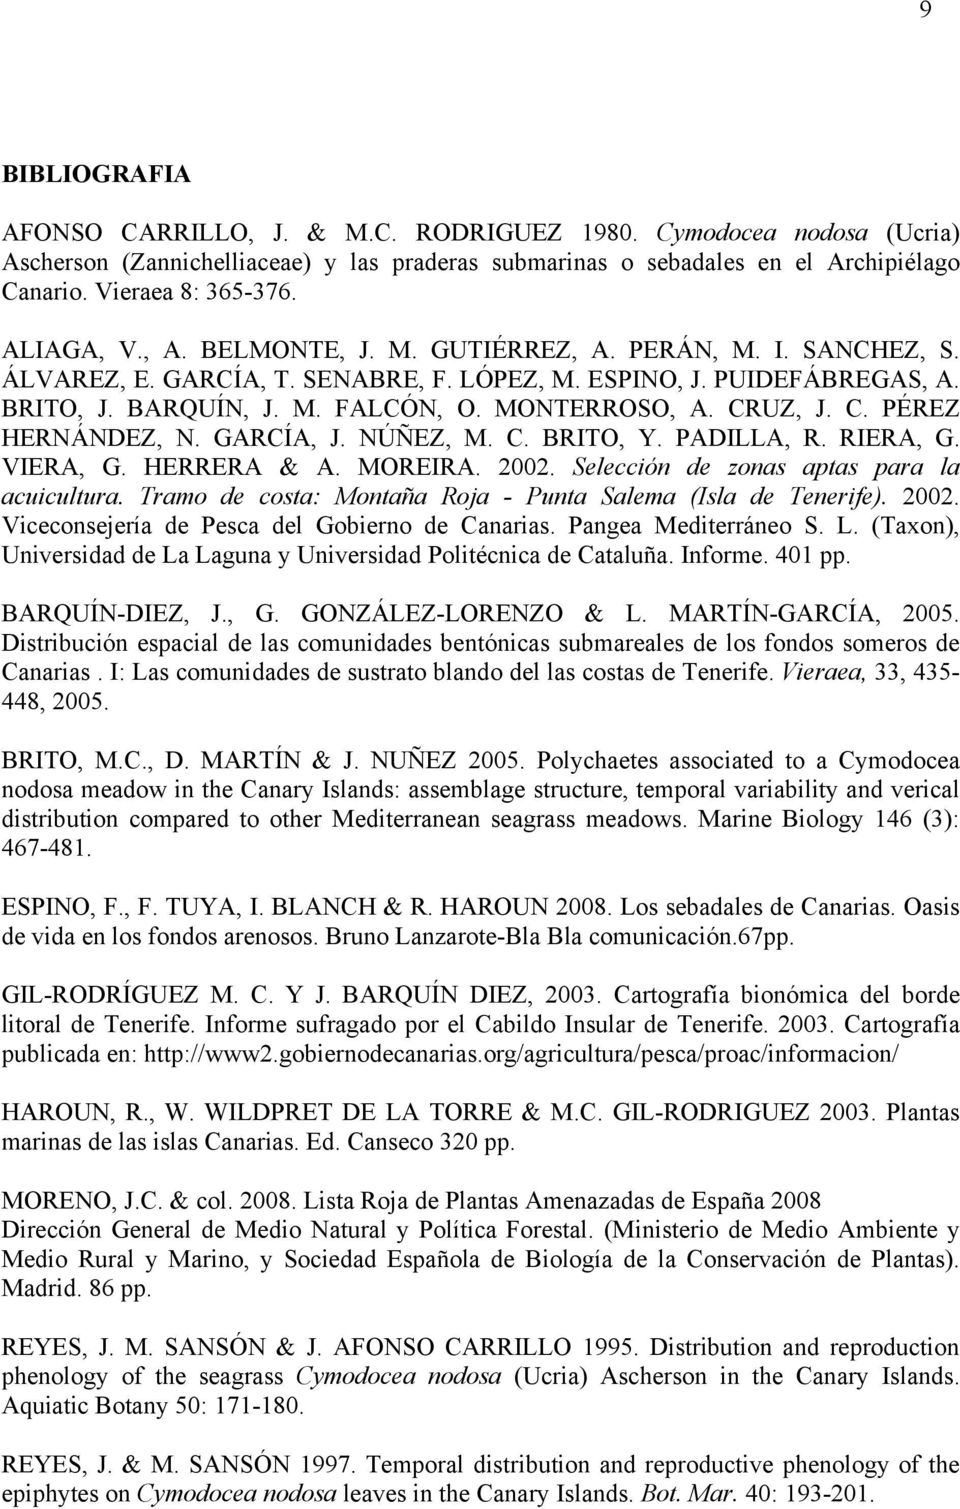 CRUZ, J. C. PÉREZ HERNÁNDEZ, N. GARCÍA, J. NÚÑEZ, M. C. BRITO, Y. PADILLA, R. RIERA, G. VIERA, G. HERRERA & A. MOREIRA. 2002. Selección de zonas aptas para la acuicultura.